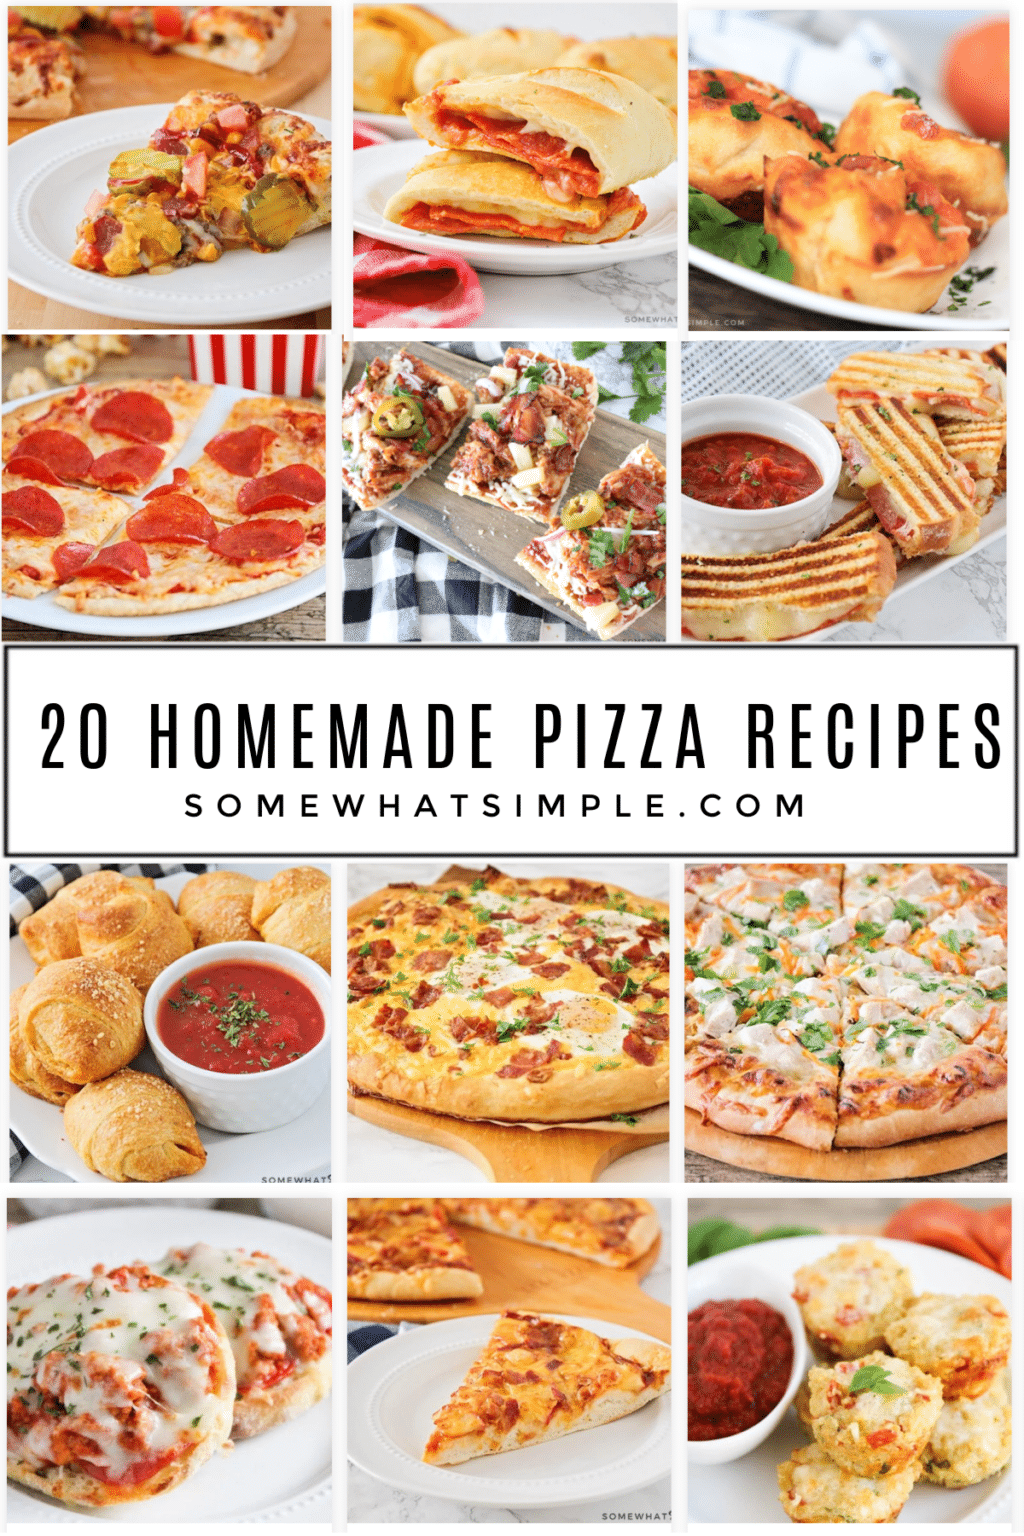 Homemade Pizza Recipes - Somewhat Simple .com